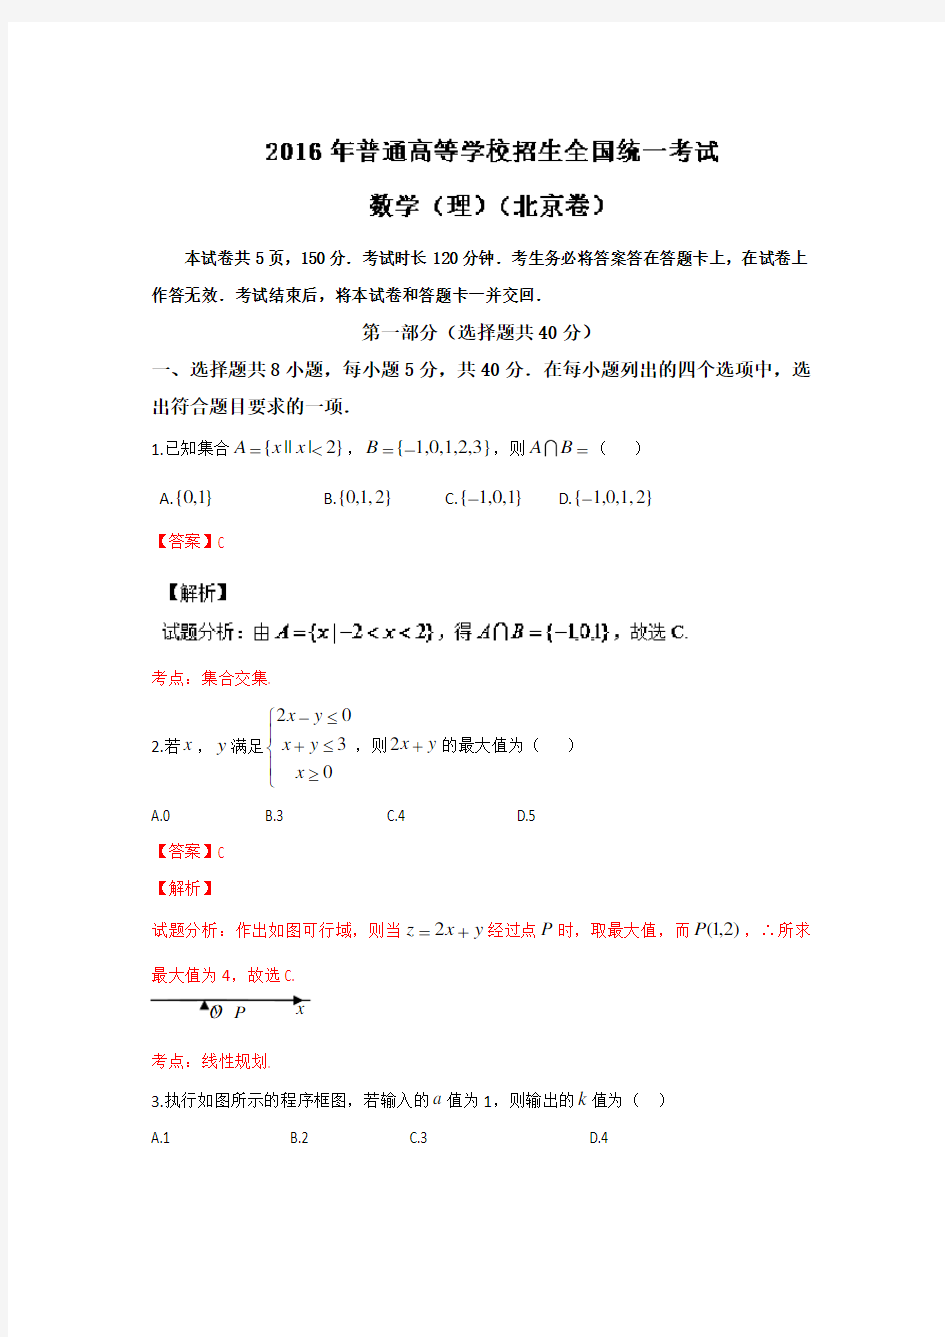 2016年高考真题——理科数学(北京卷)正式版 Word版含解析